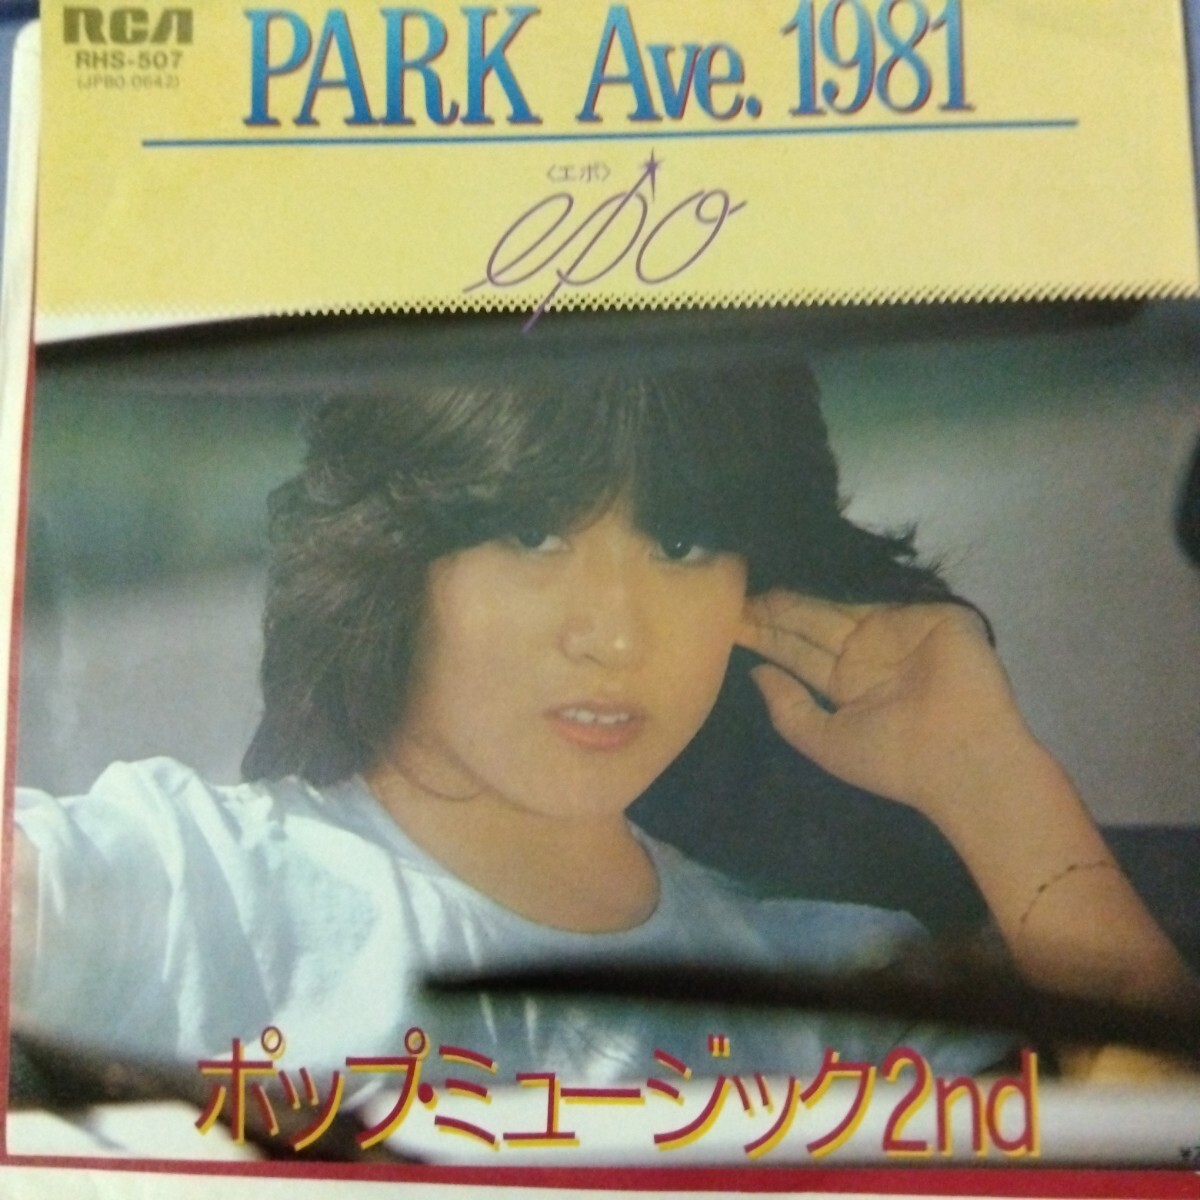 エポ epo park avn. 1981 80年 ep 7inch 和物 和モノ シティポップ city popの画像1